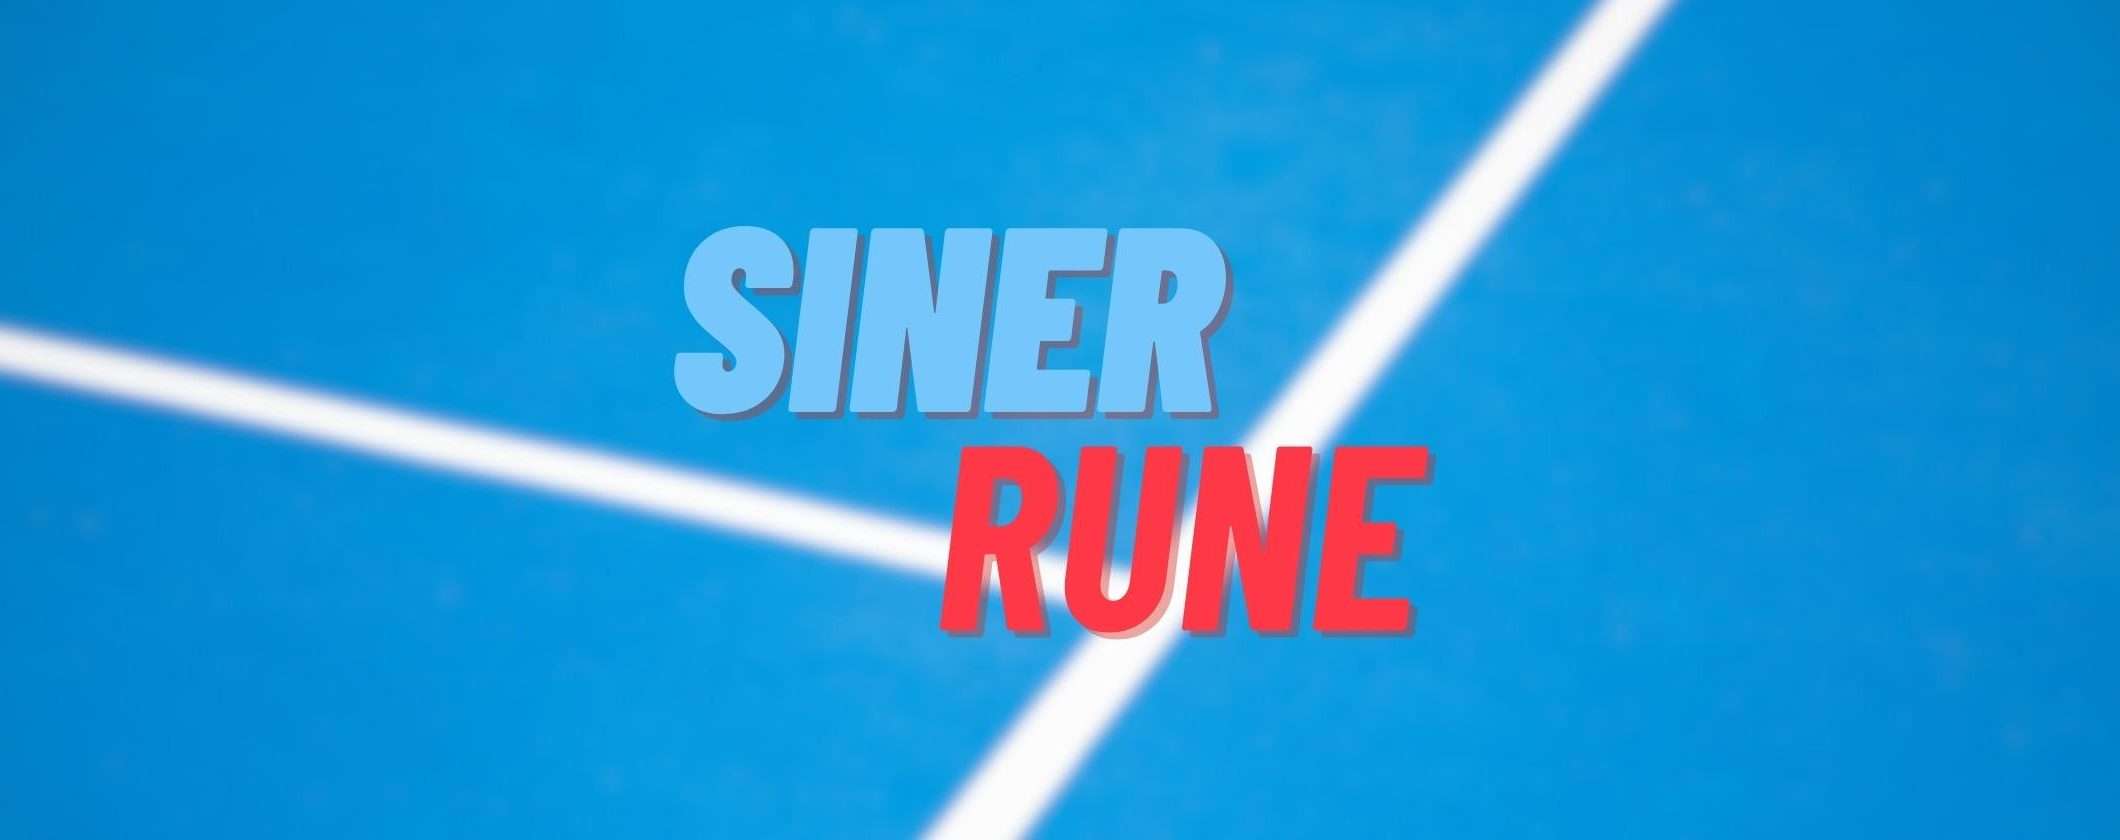 Sinner-Rune: come vedere il match del grande tennis in streaming